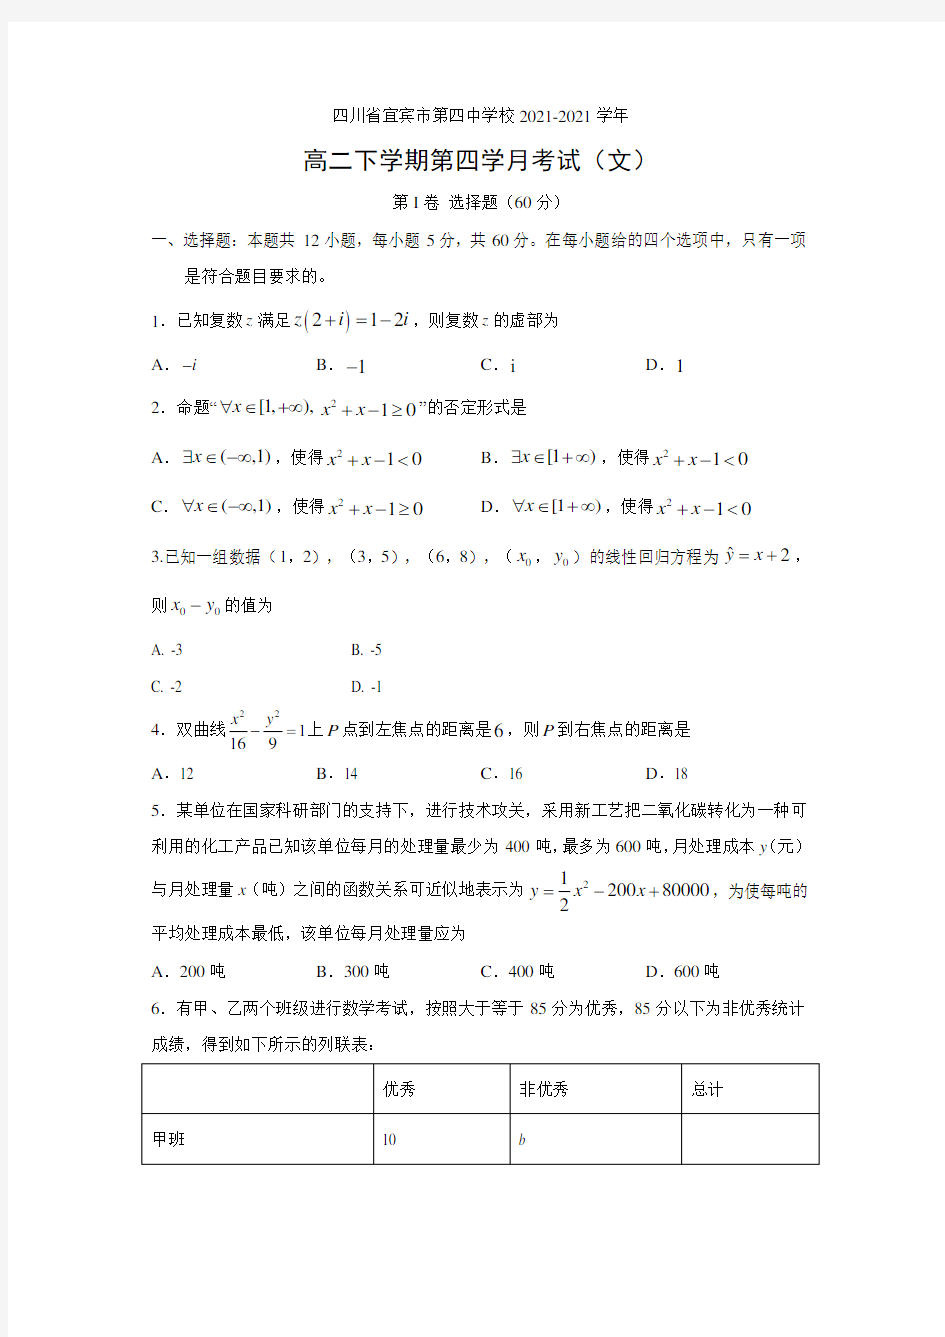 【数学】四川省宜宾市第四中学校2021-2021学年高二下学期第四学月考试(文)